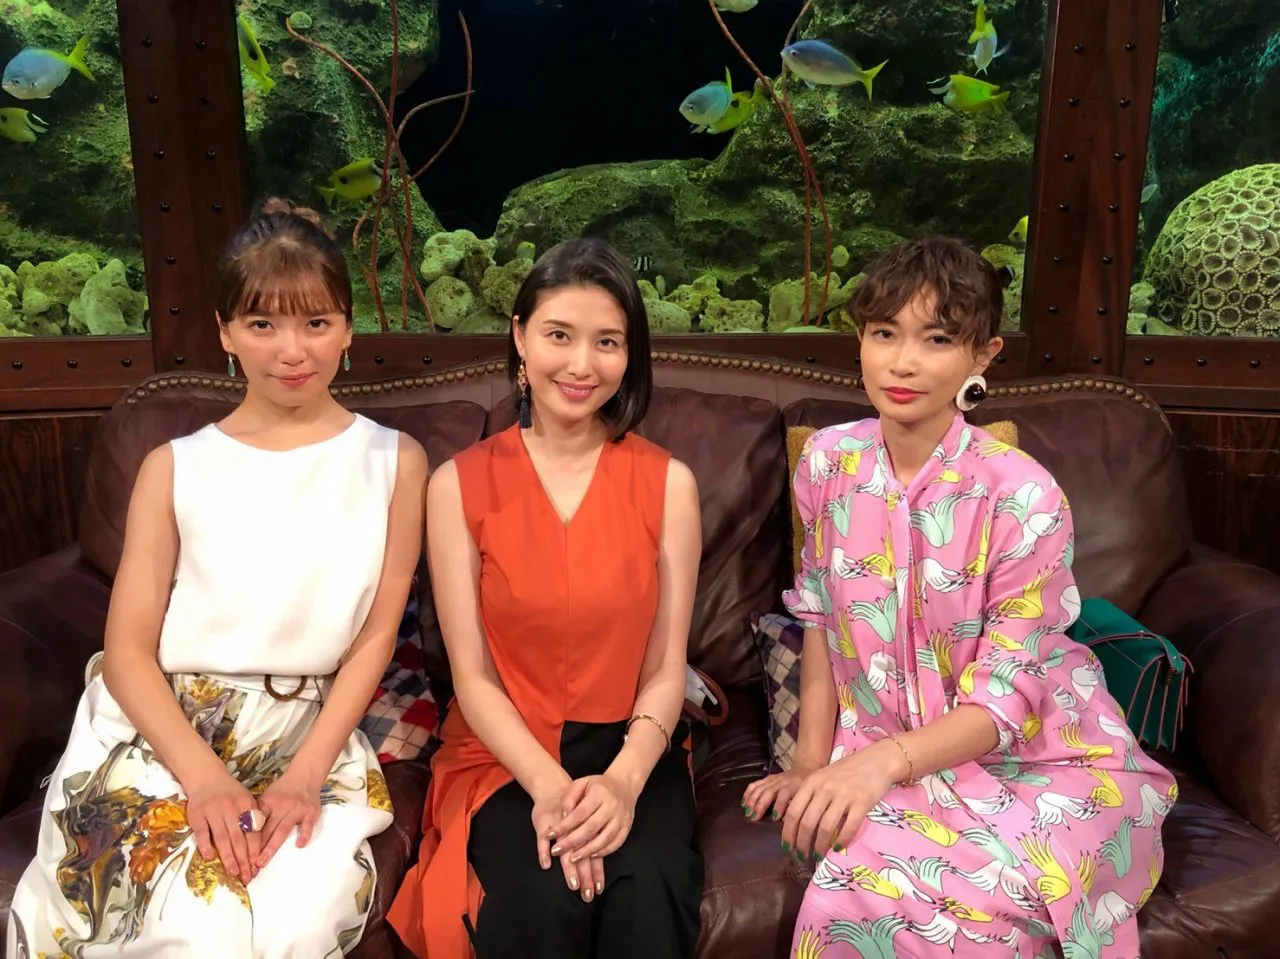 7月2日(火)放送の「グータンヌーボ2」でトークを繰り広げる宇野実彩子、橋本マナミ、長谷川京子(左から)